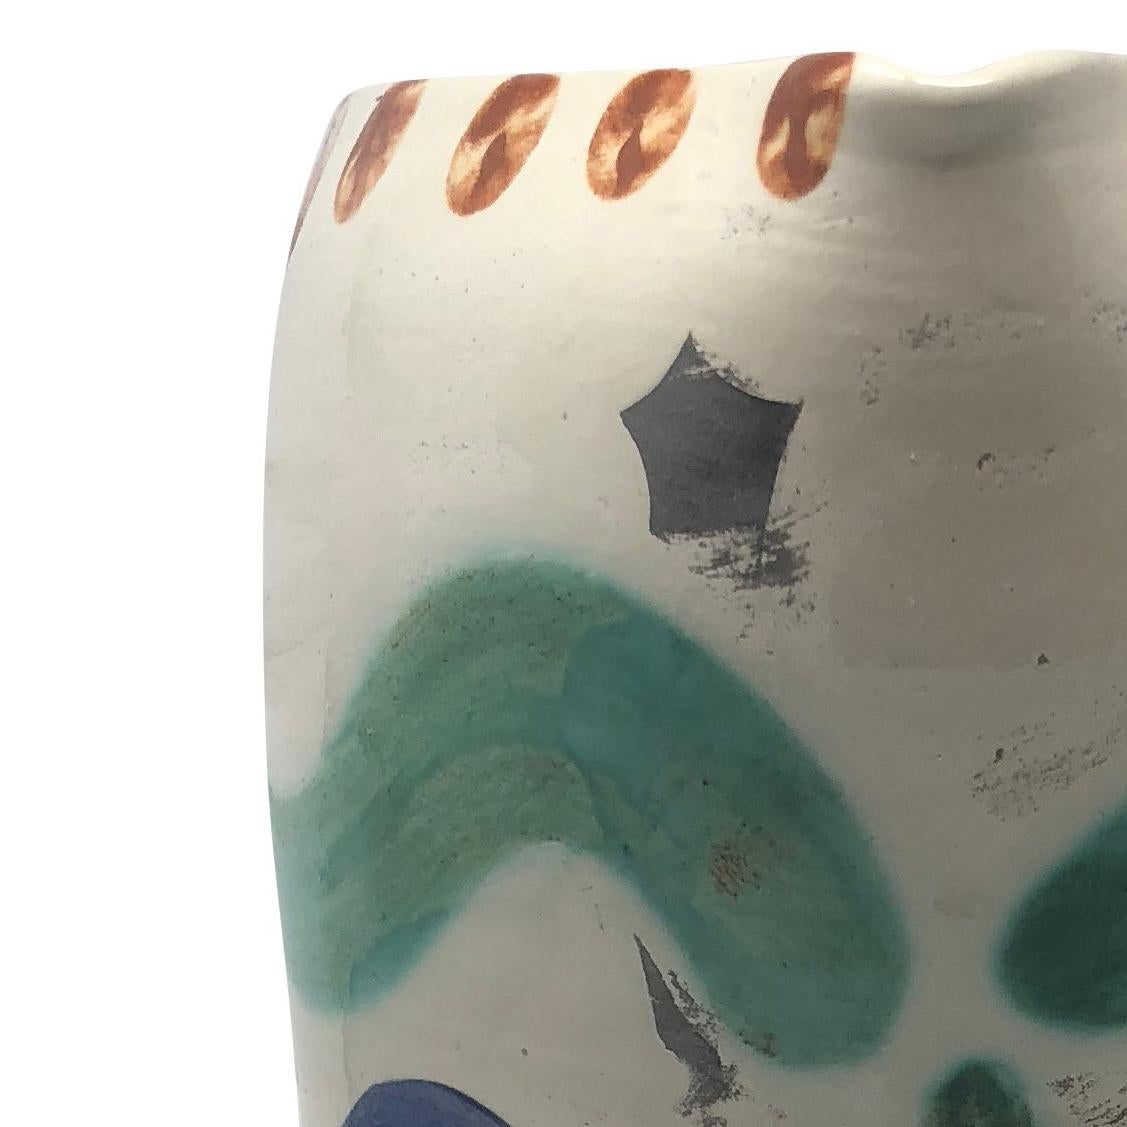 This Picasso ceramic pitcher 